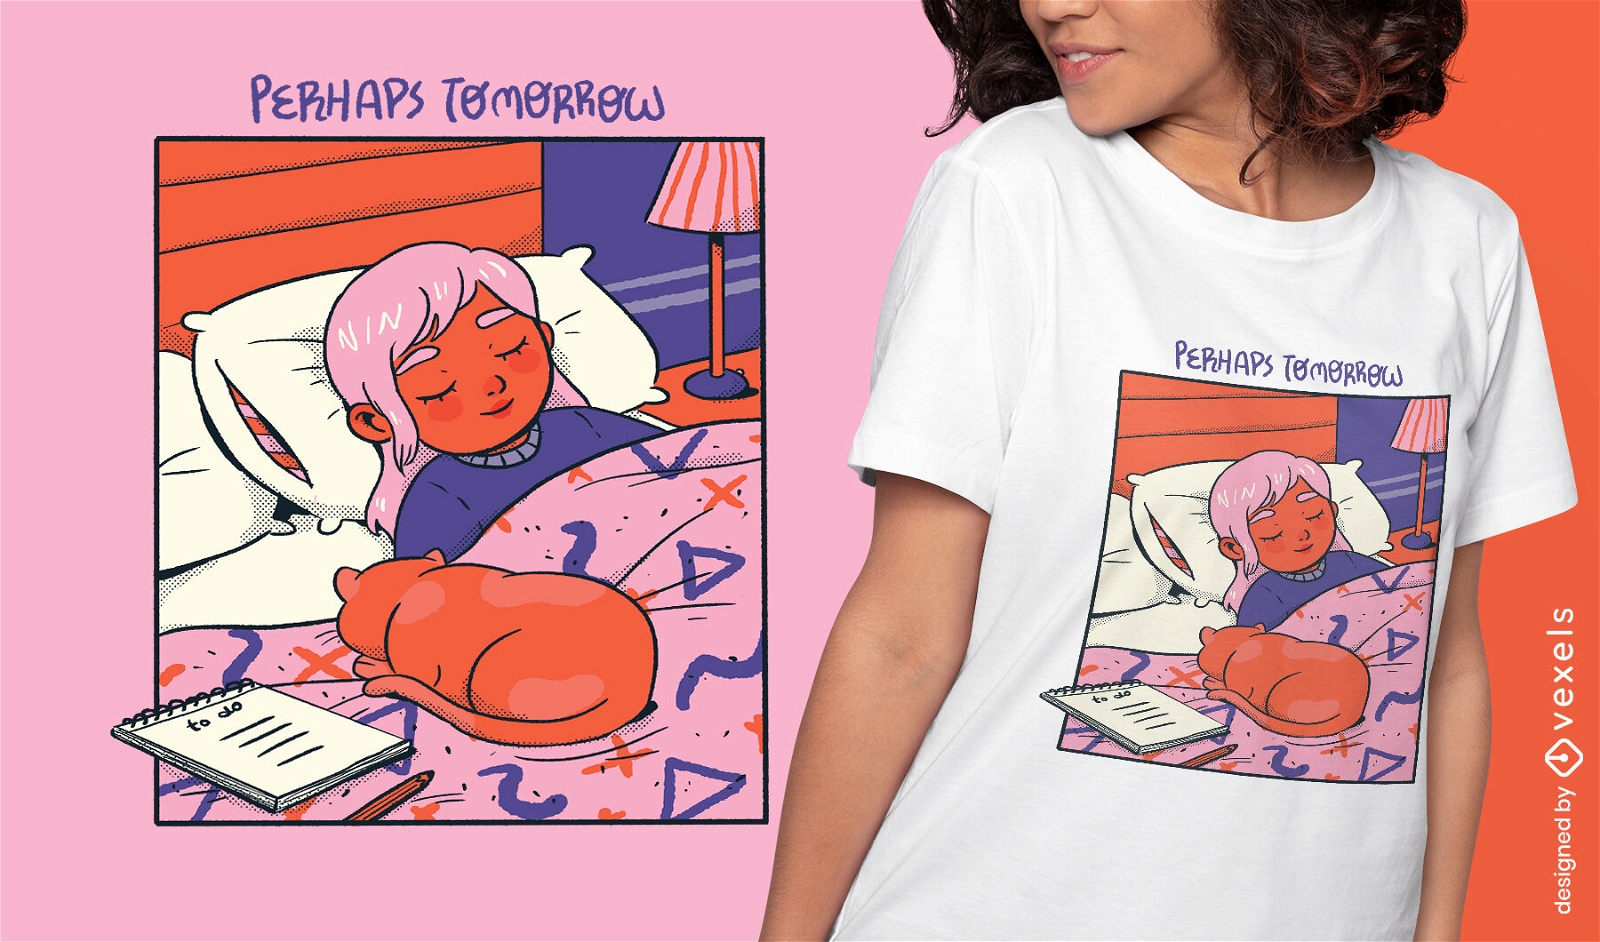 Chica y gato durmiendo acogedor diseño de camiseta cómica.